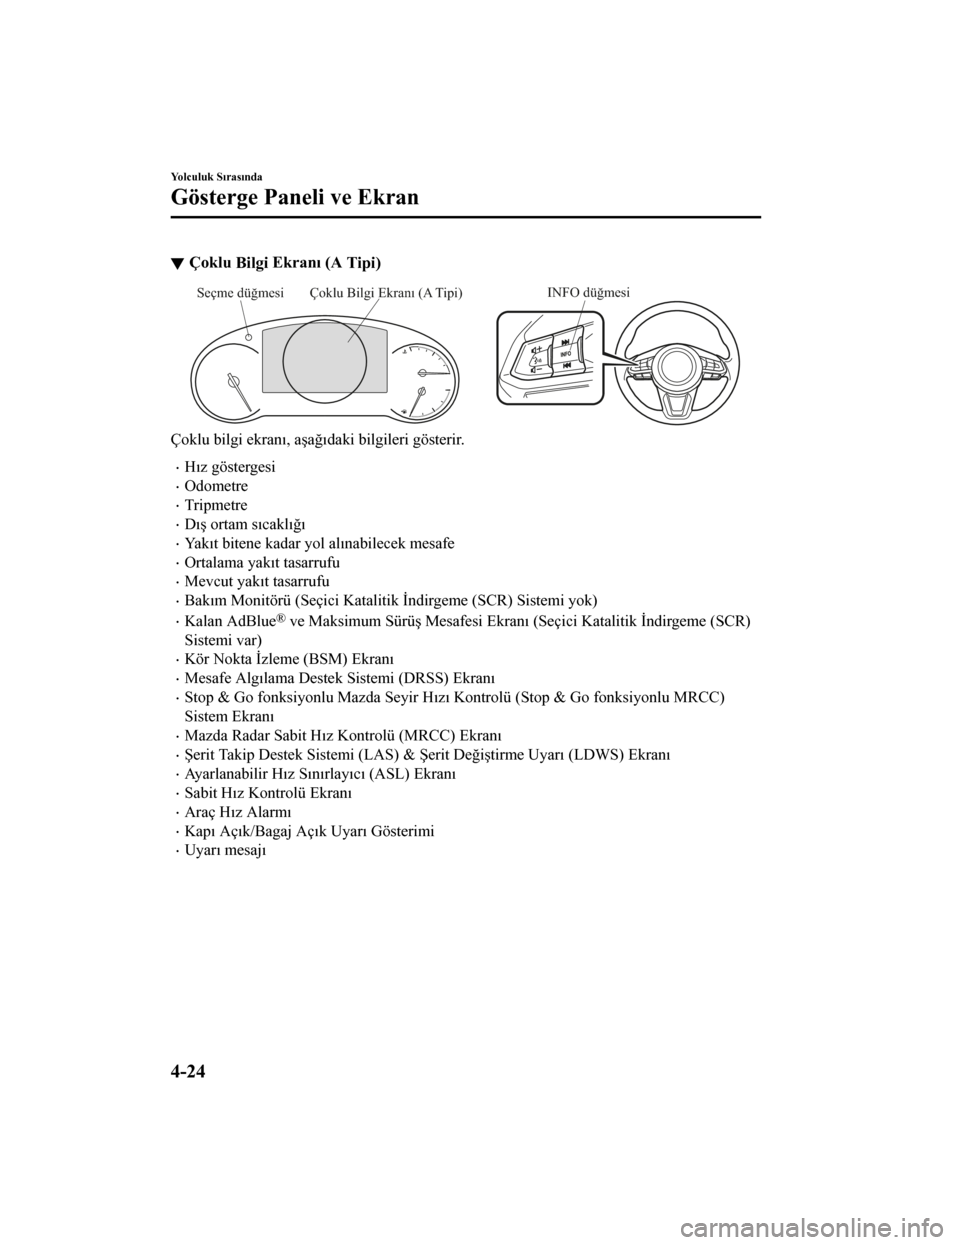 MAZDA MODEL CX-5 2019  Kullanım Kılavuzu (in Turkish) Çoklu B
tlg
t Ekranı (A 
T
tp
t)
INFO düğmesiÇoklu Bilgi Ekranı (A Tipi)
Seçme düğmesi
Çoklu b
tlg
t ekranı, aşağı dak
t b
tlg
tler
t göster
tr.
Hız gösterges
t
Odometre
Tr
t